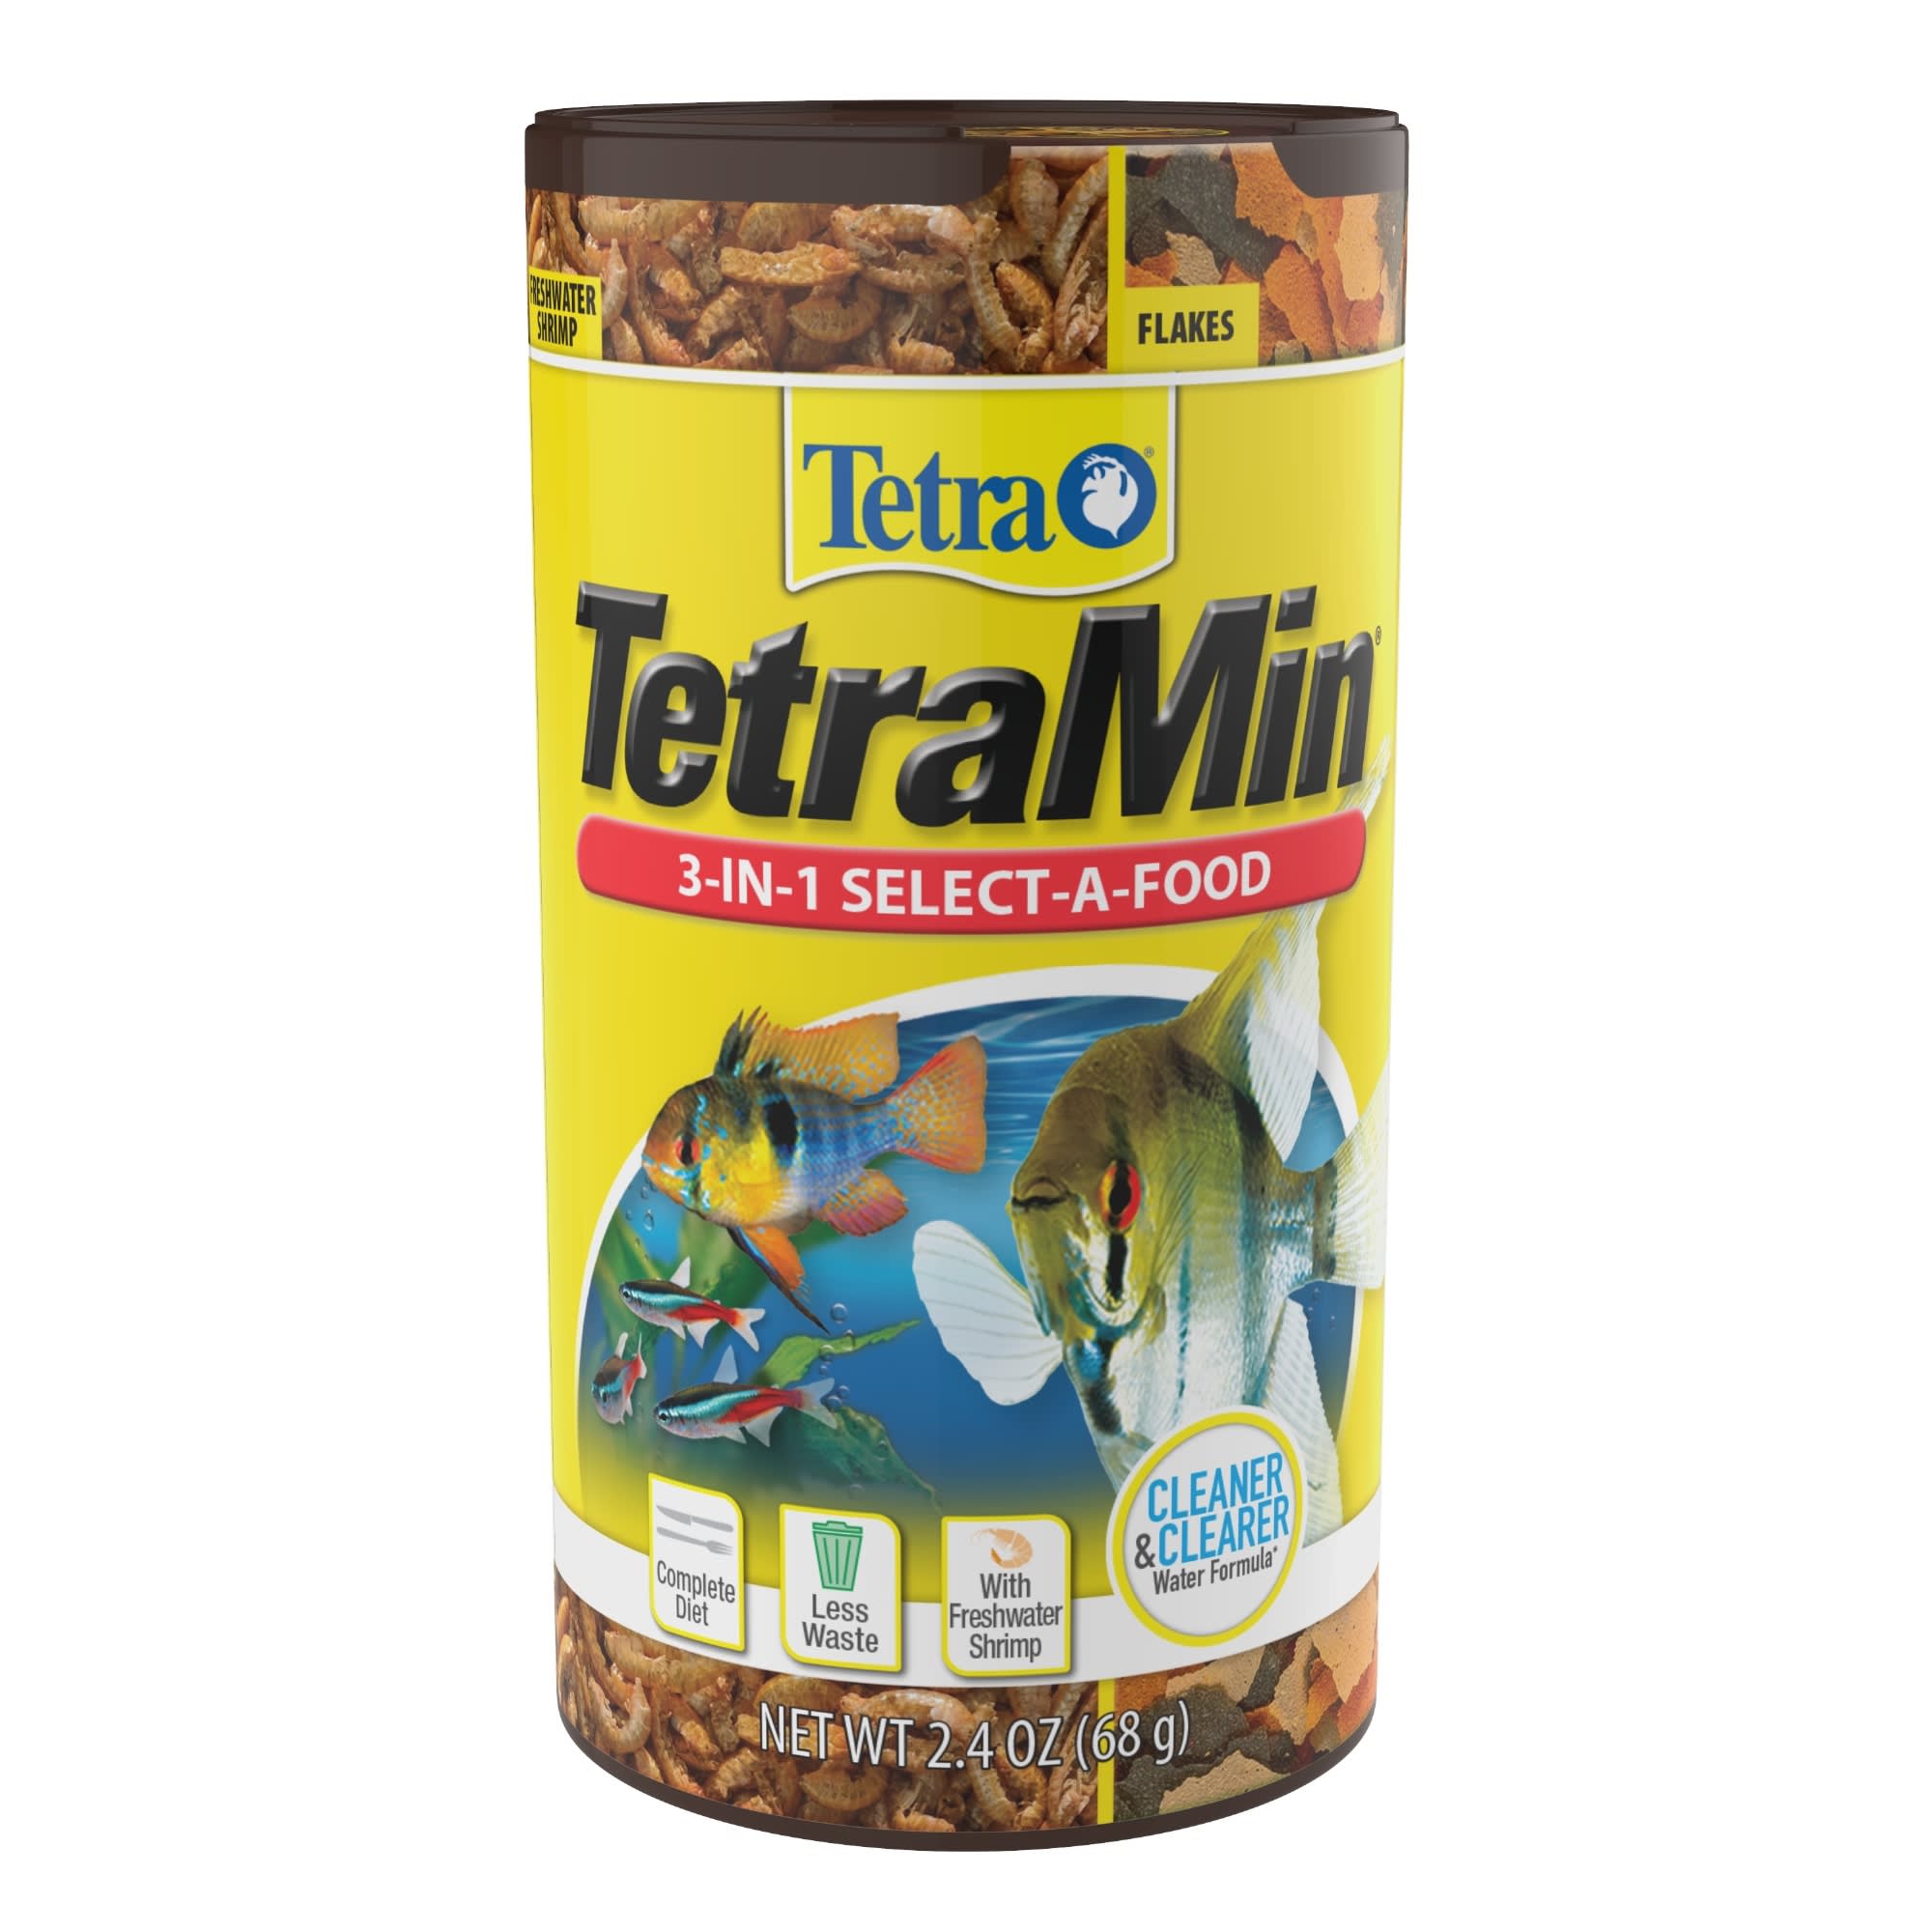 Tetra - Tetra, TetraMin - Tropical Flakes (1 oz), Shop